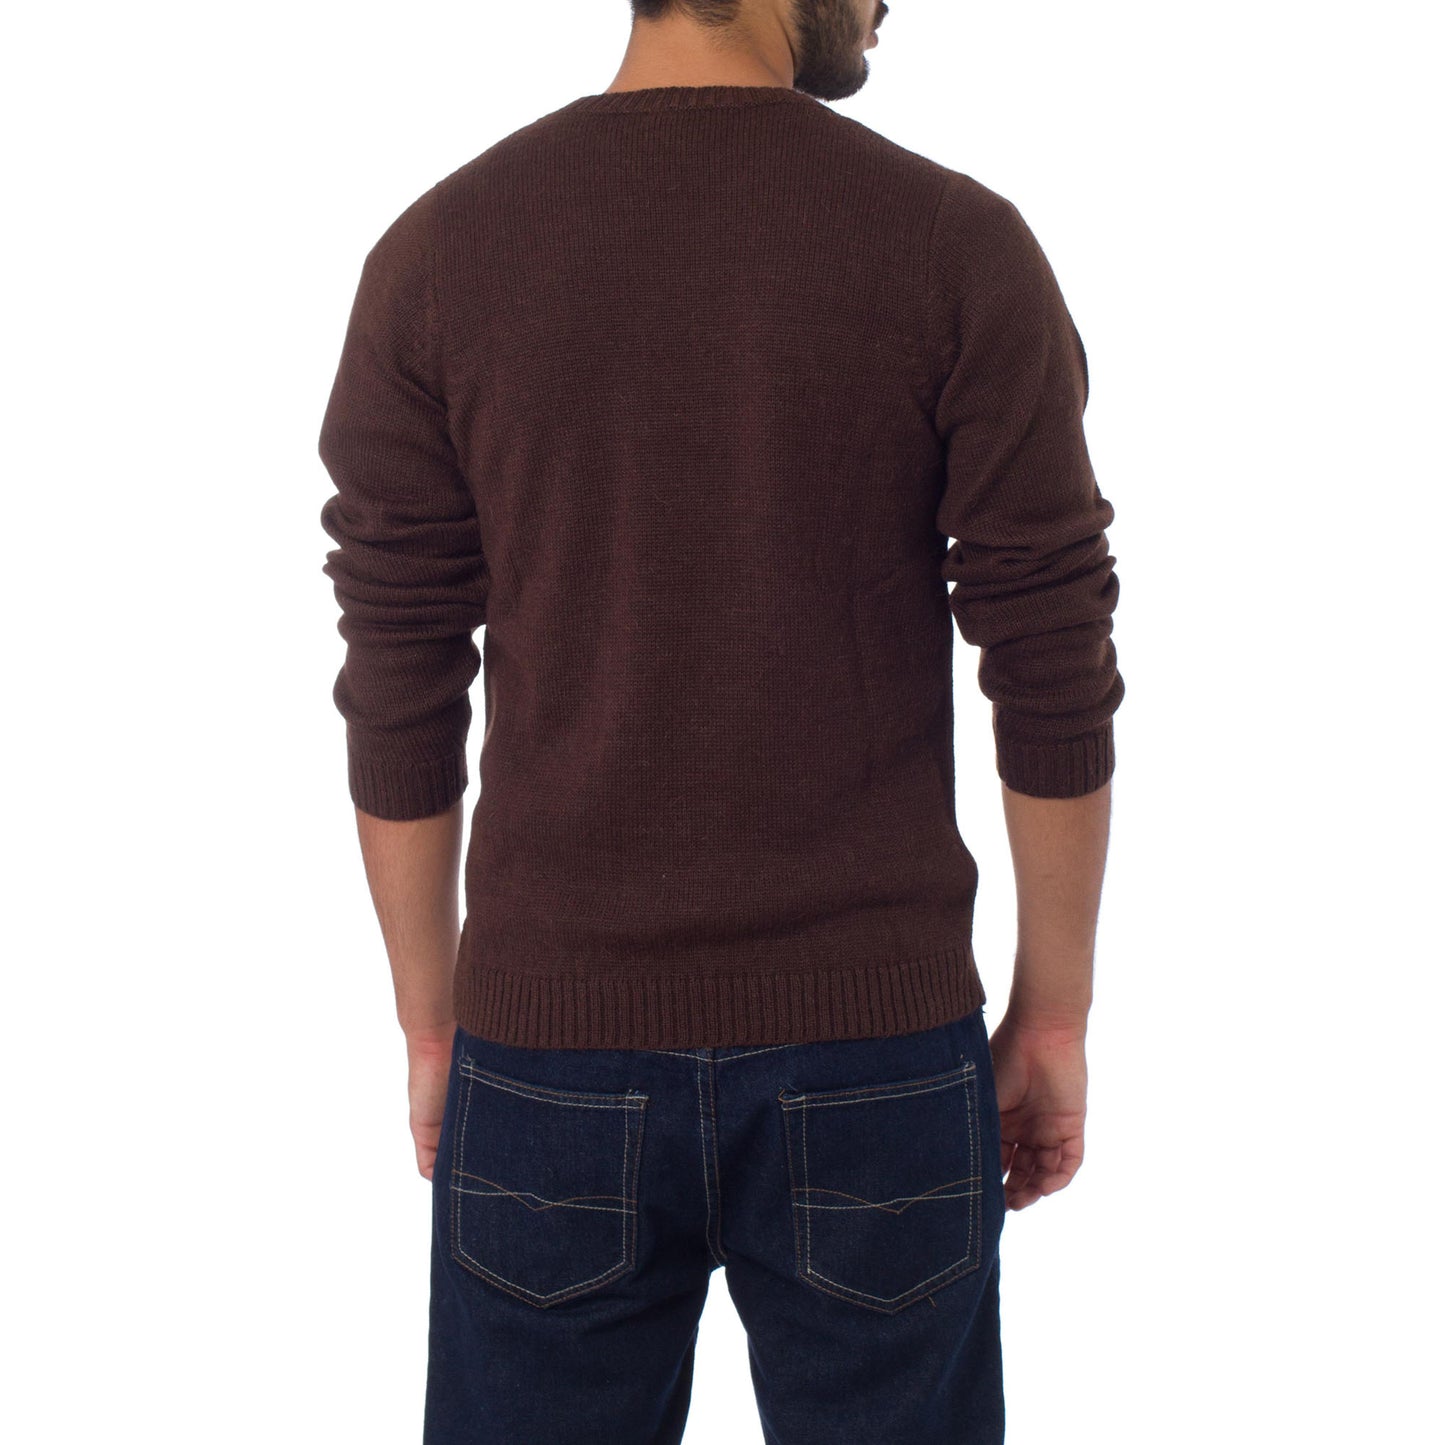 Favorite Memories Men's Brown Alpaca Sweater